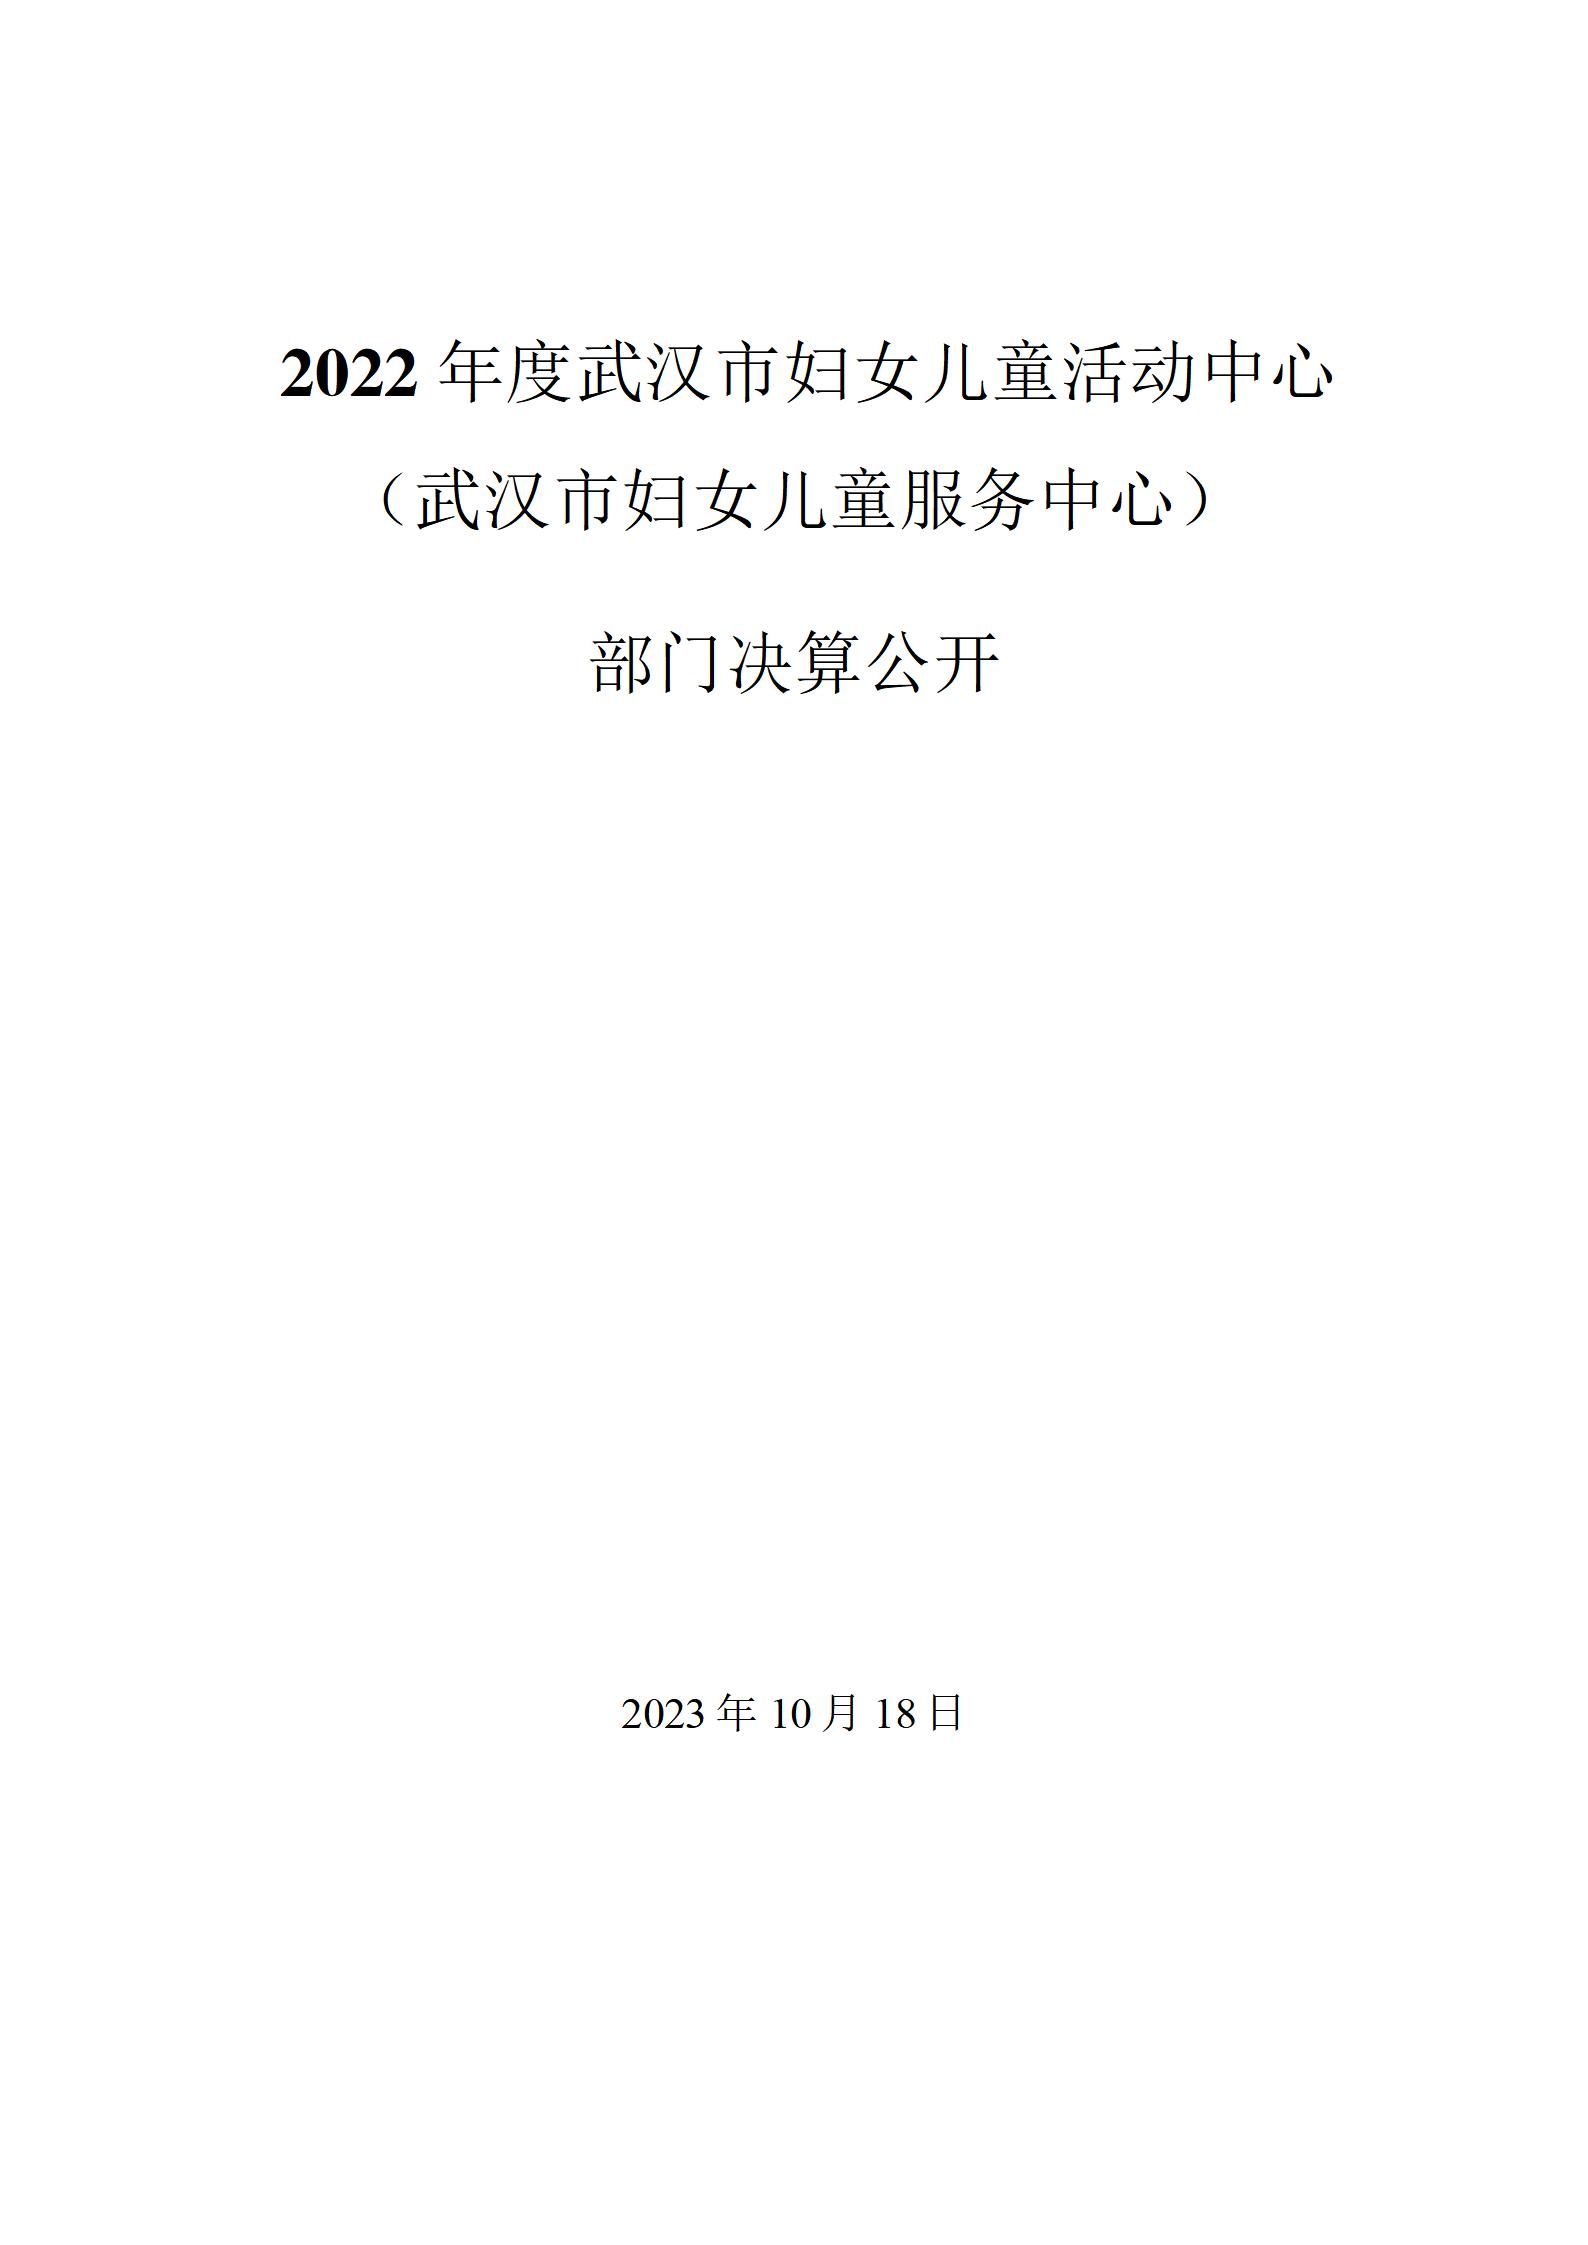 2022年度武汉市妇女儿童活动(服务）中心决算公开_01.jpg